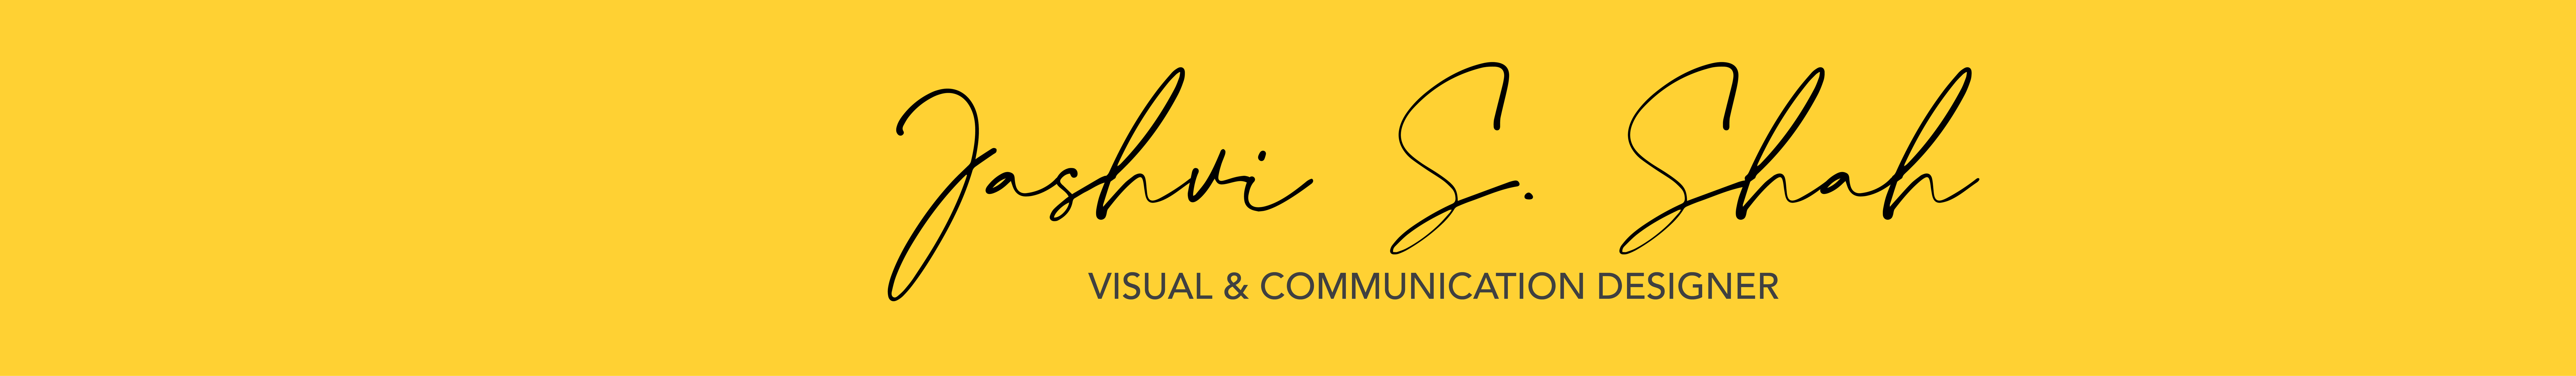 Jashvi Shah's profile banner